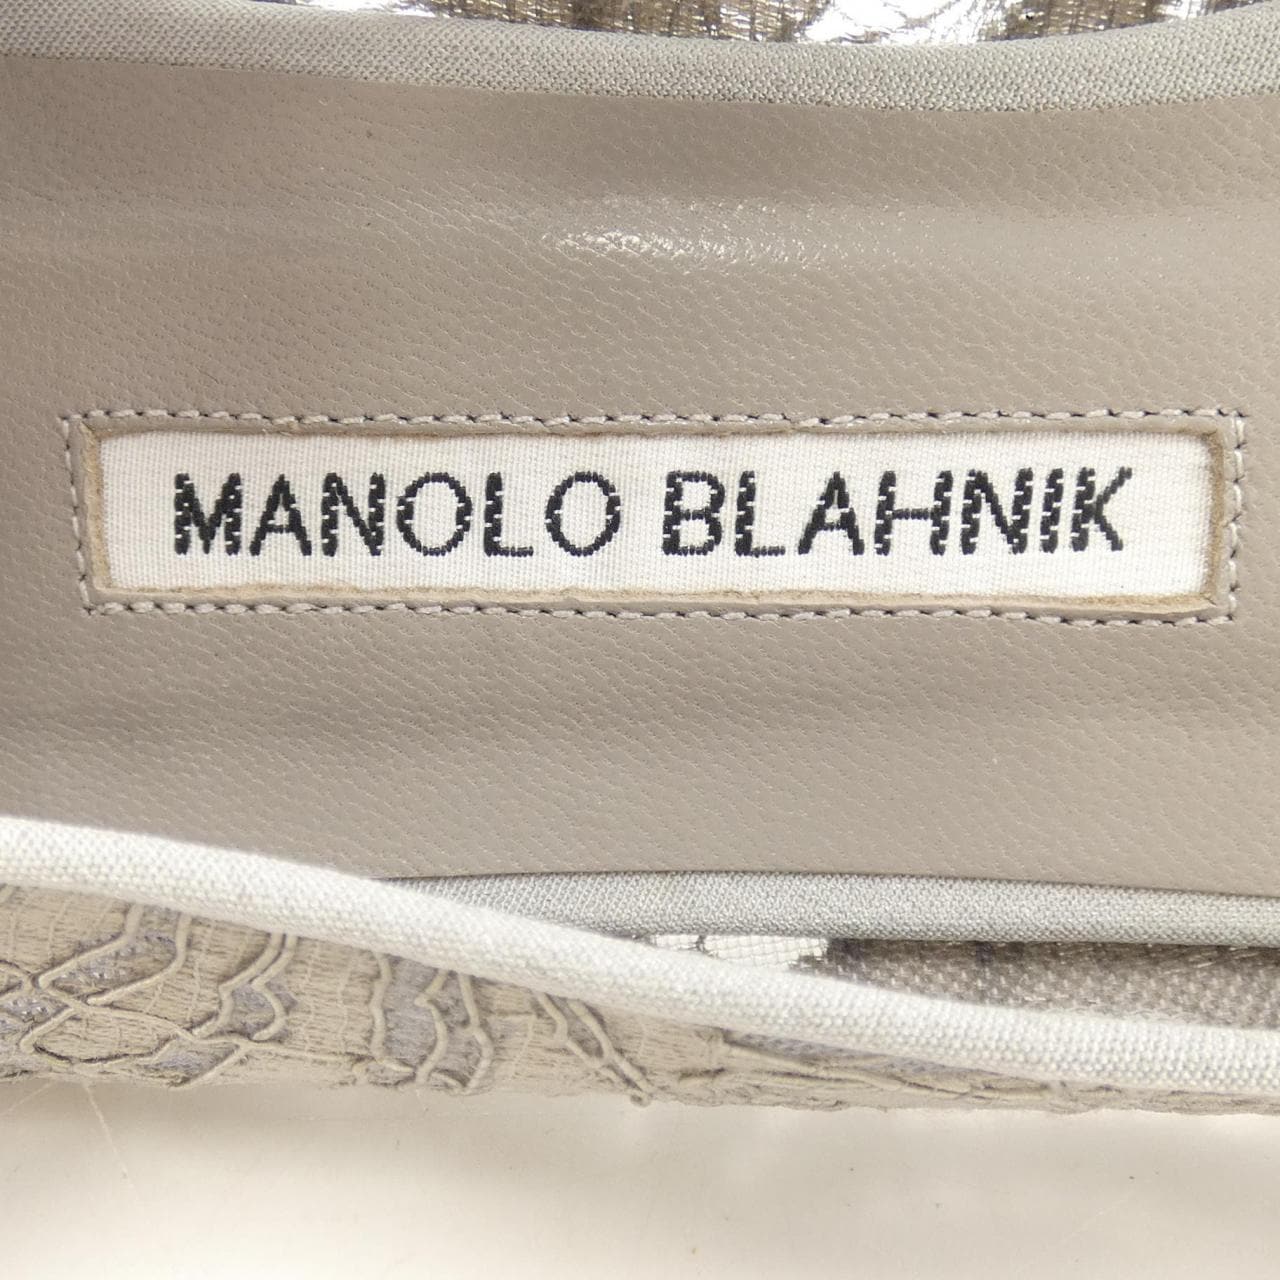 MANOLO BLAHNIK (Manolo Blahnik) 平底鞋